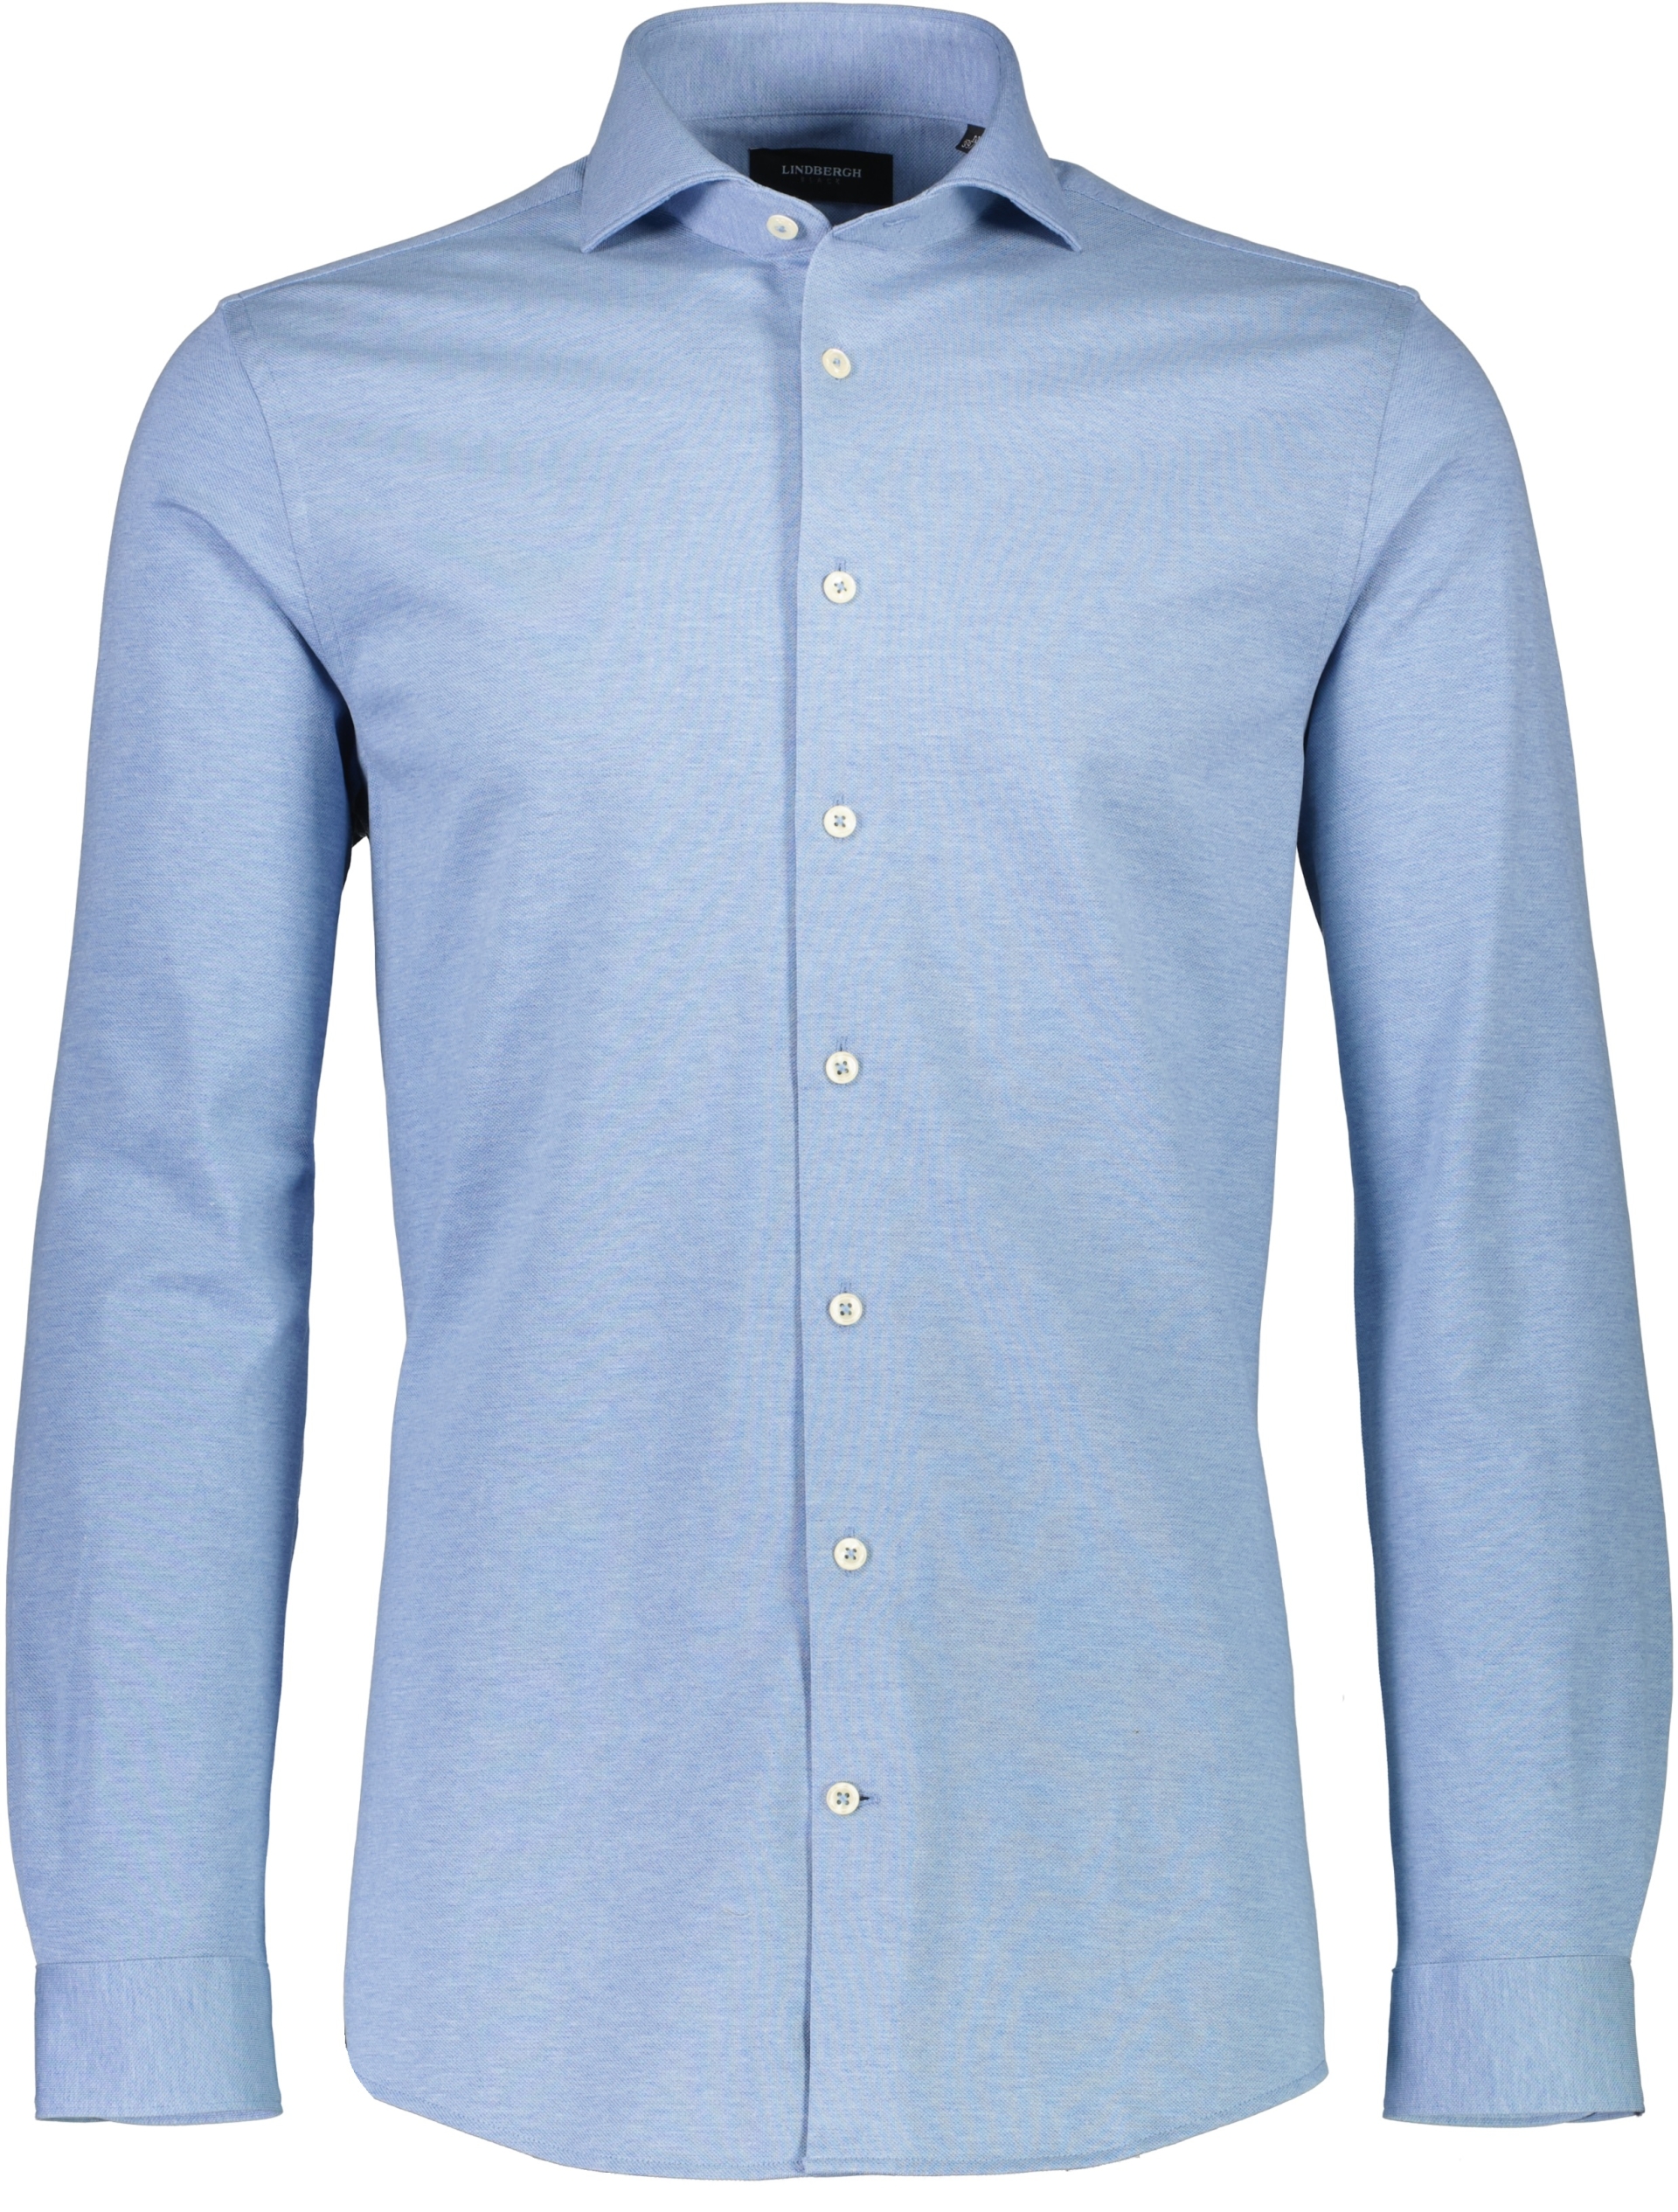 Lindbergh Business casual shirt blue / lt blue mel